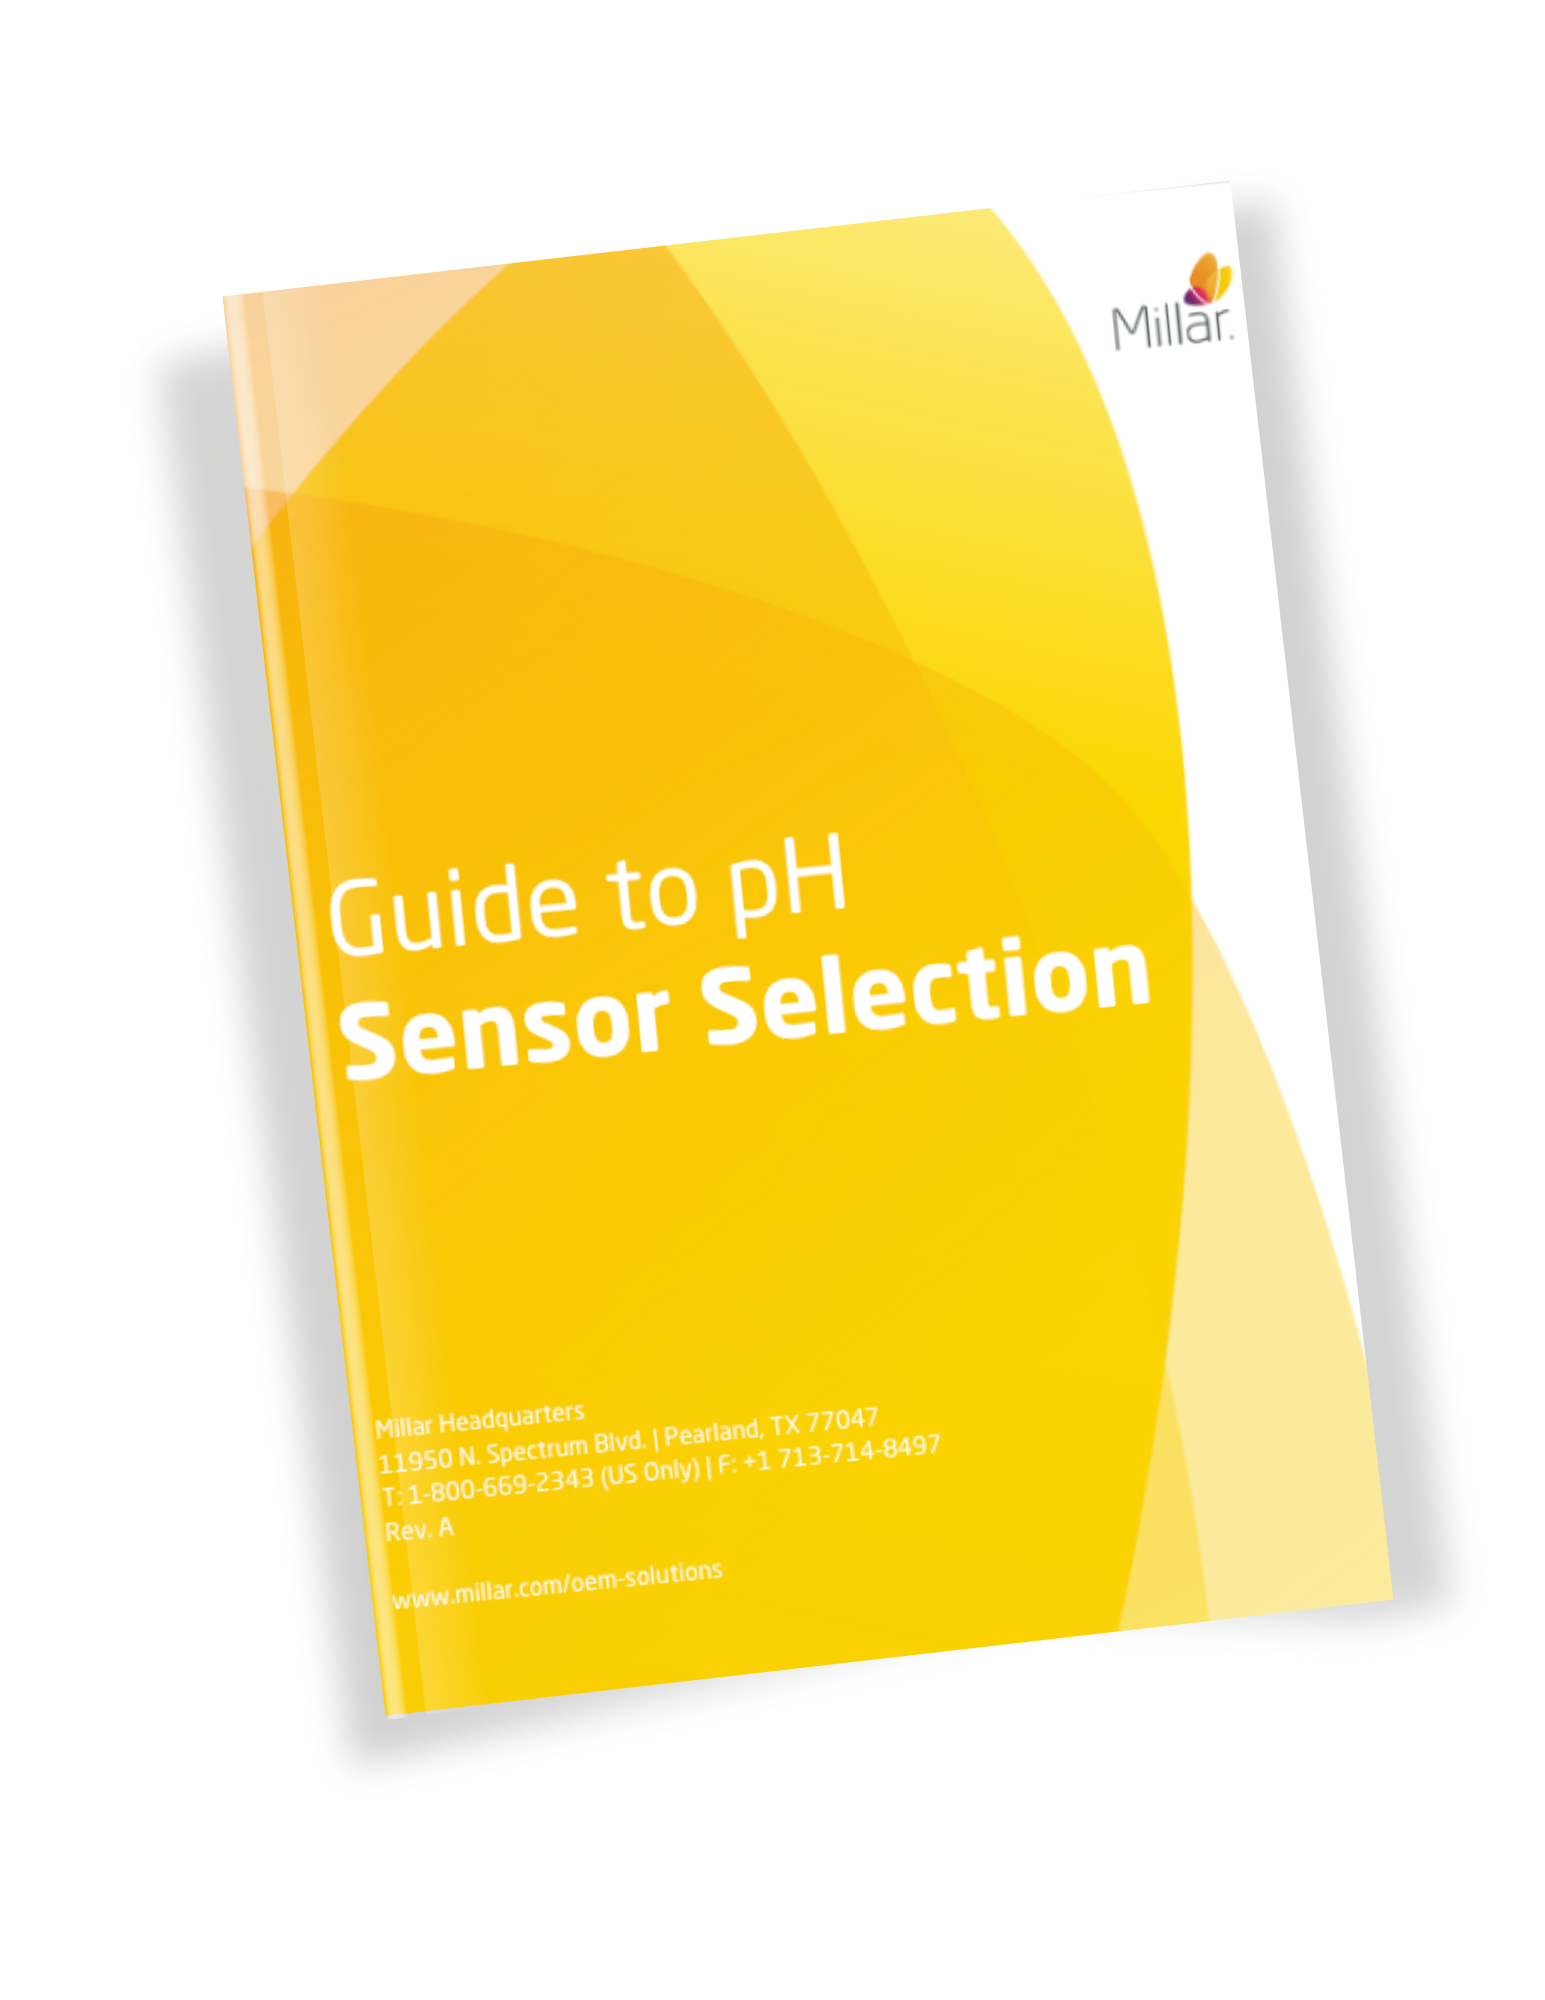 Guide to pH Sensor Selection